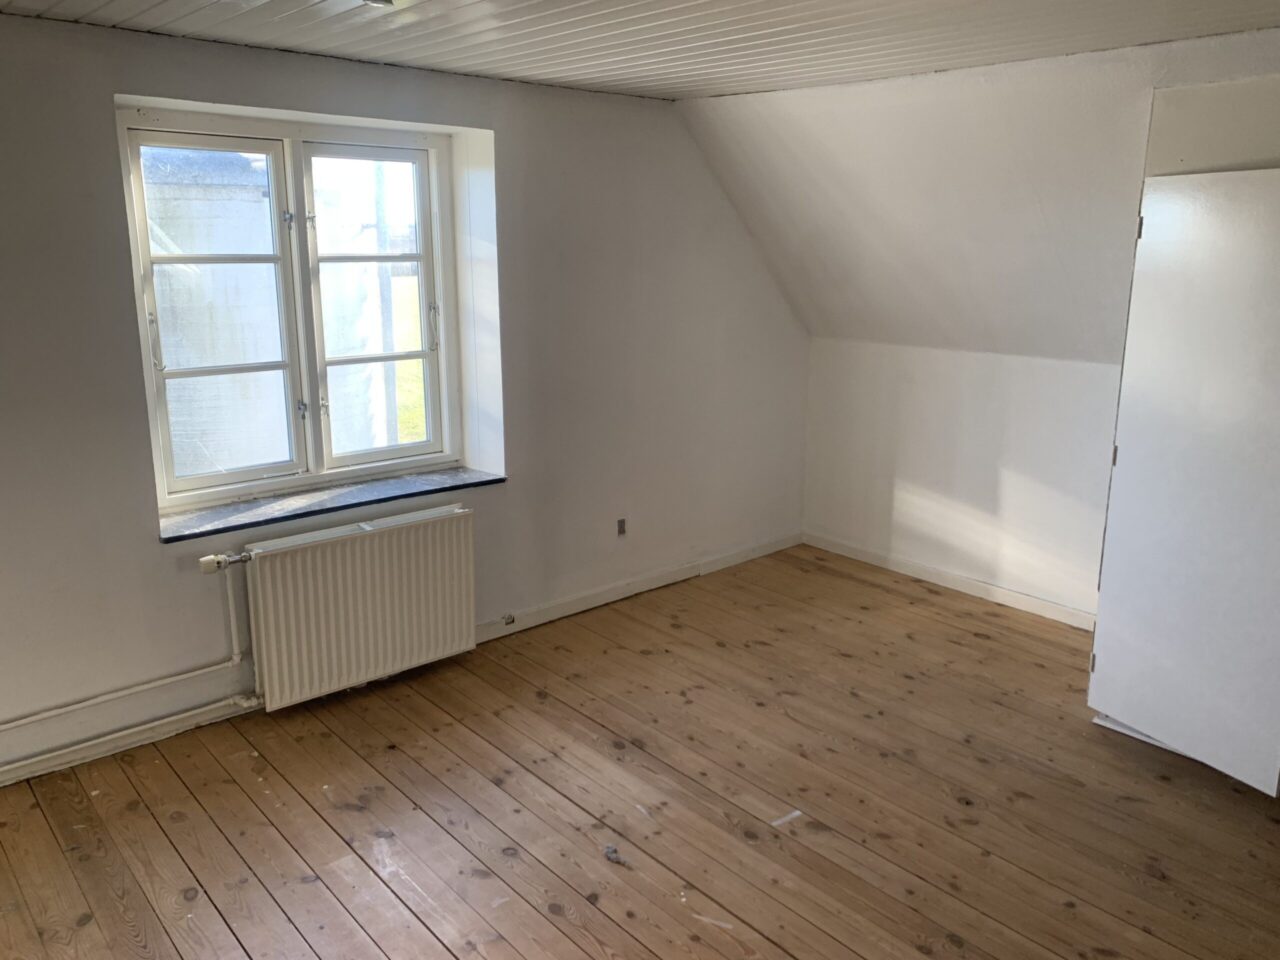 Investeringsejendom i Christiansfeld - Hvidt lokale med trægulv og et vindue